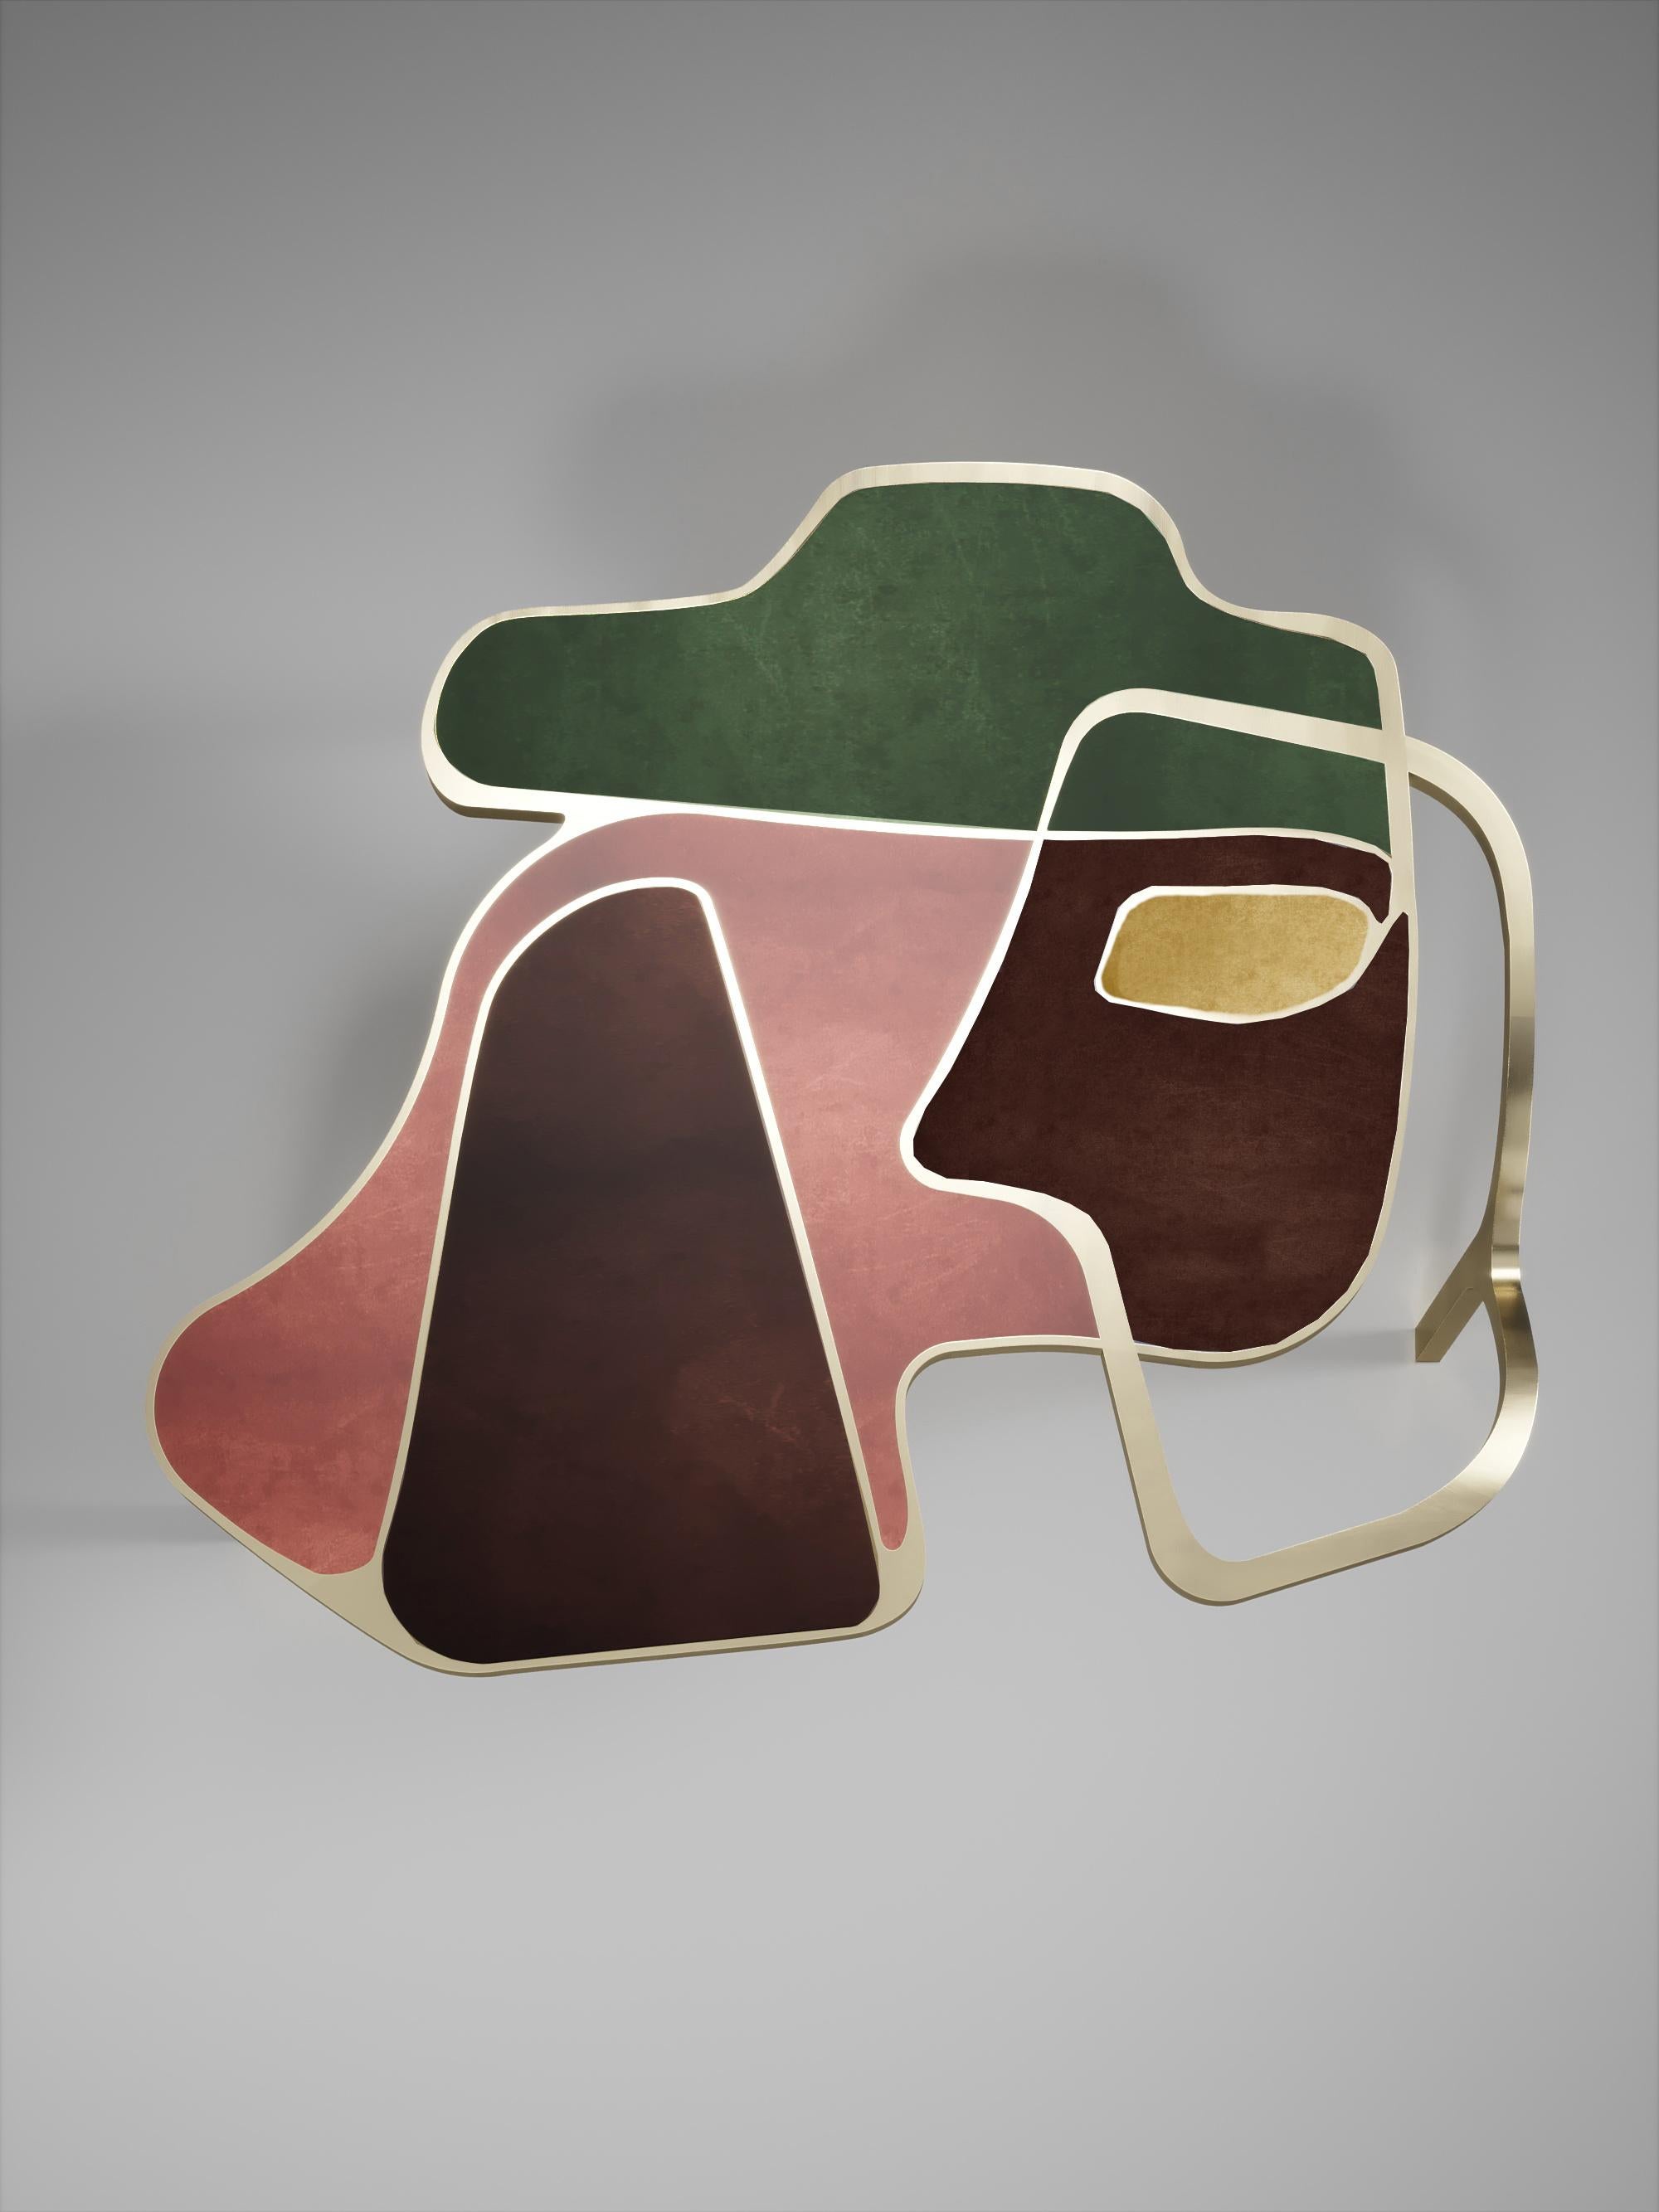 Der Cocteau Couchtisch von R&Y Augousti ist ein wahrhaft einzigartiges Stück. Das skulpturale und ätherische Werk weist abstrakte Formen, Gestalten und Figuren auf, die man auf verschiedene Weise interpretieren kann. Die